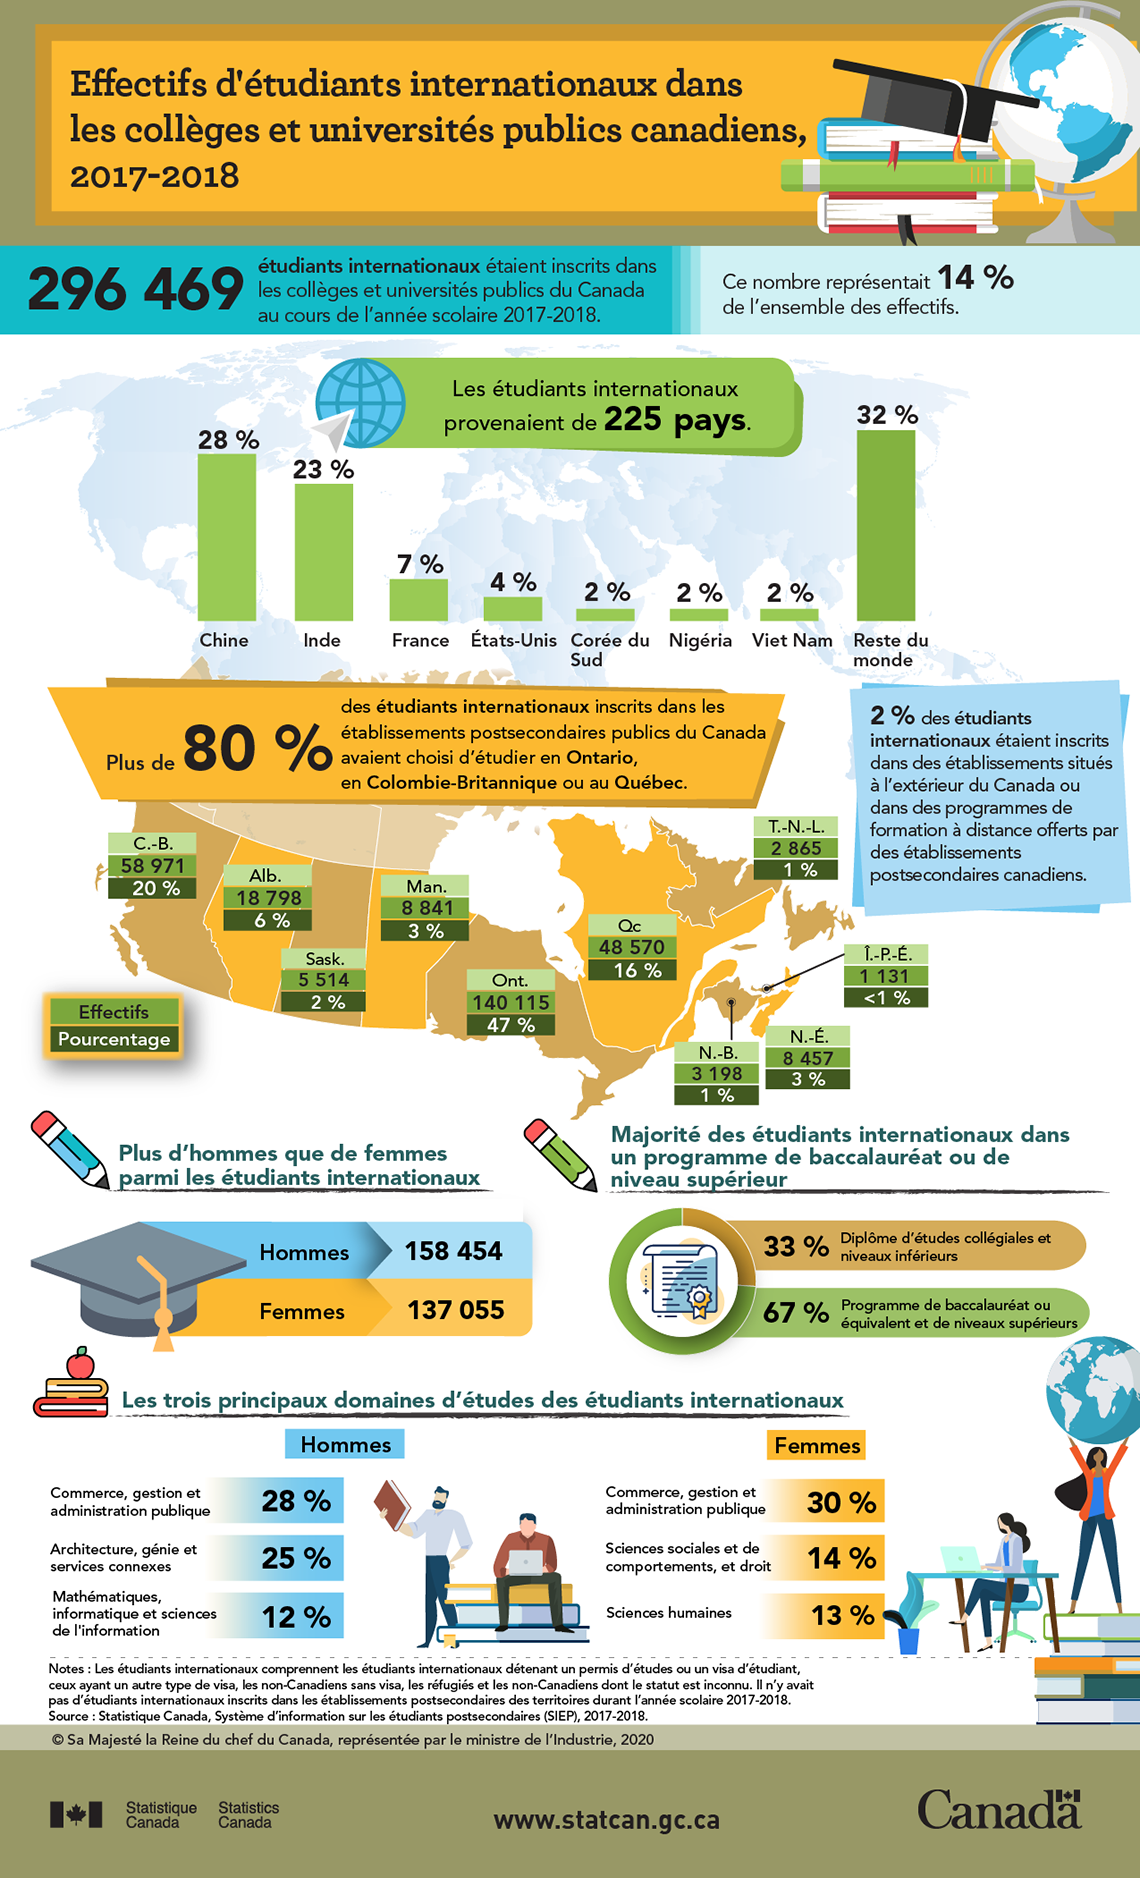 Infographie : Effectifs d'étudiants internationaux dans les collèges et universités publics canadiens, 2017-2018